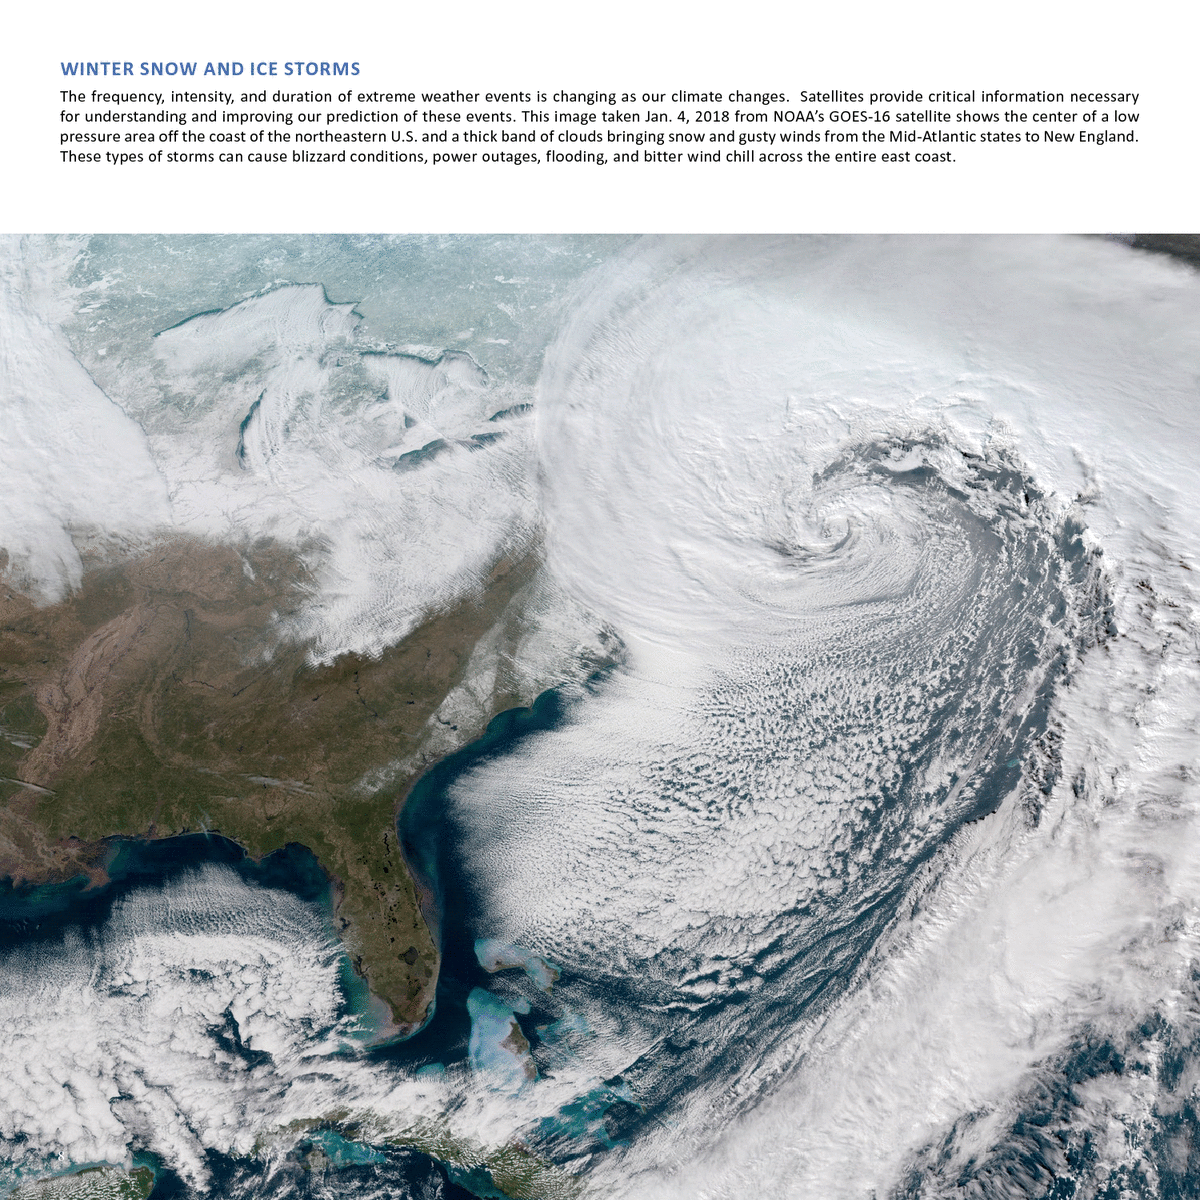 Айс шторм. Снимки из космоса шторма. Космические снимки гидросферы. Изменение климата на планете. Норвежское море на космическом снимке.